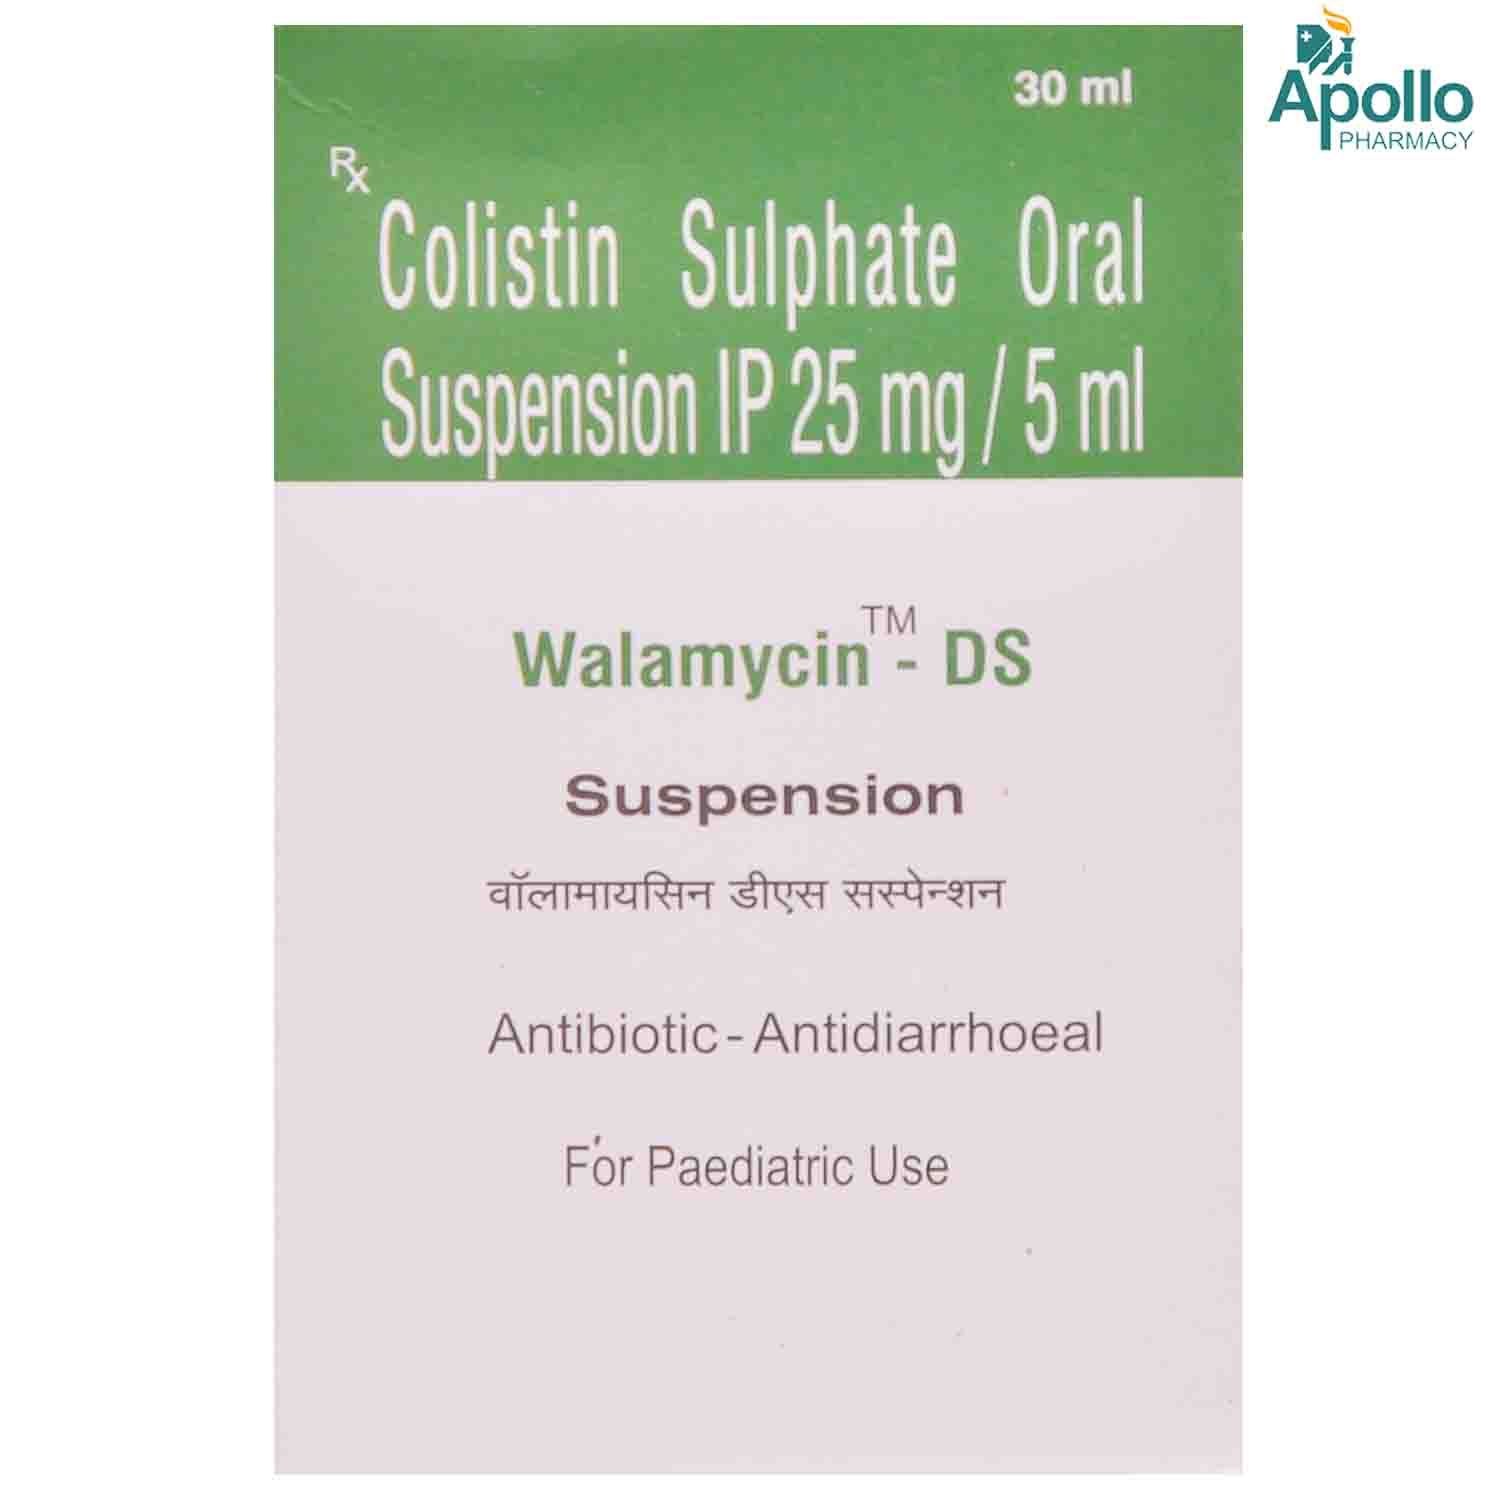 Buy Walamycin DS Suspension 30 ml Online